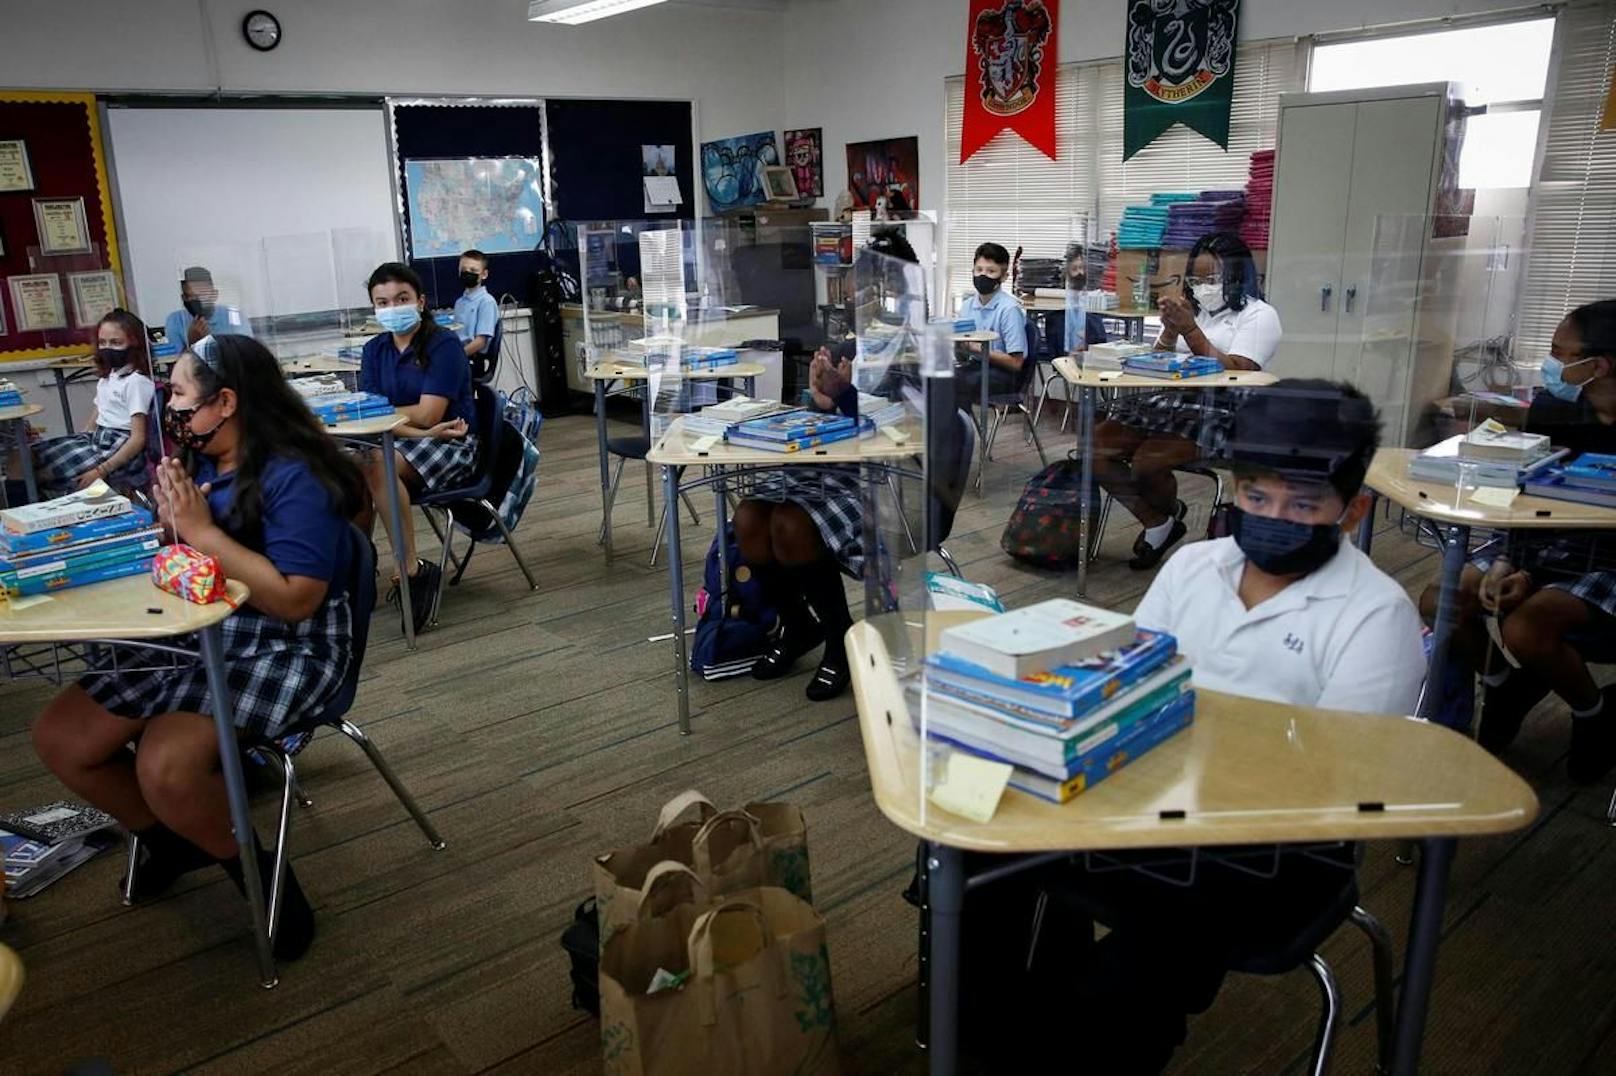 Eine Studie geht davon aus, dass ein Lehrer 12 seiner Schüler und Schülerinnen mit Corona infiziert hatte. Aus demselben Ausbruch könnten sich insgesamt 26 Kinder angesteckt haben.